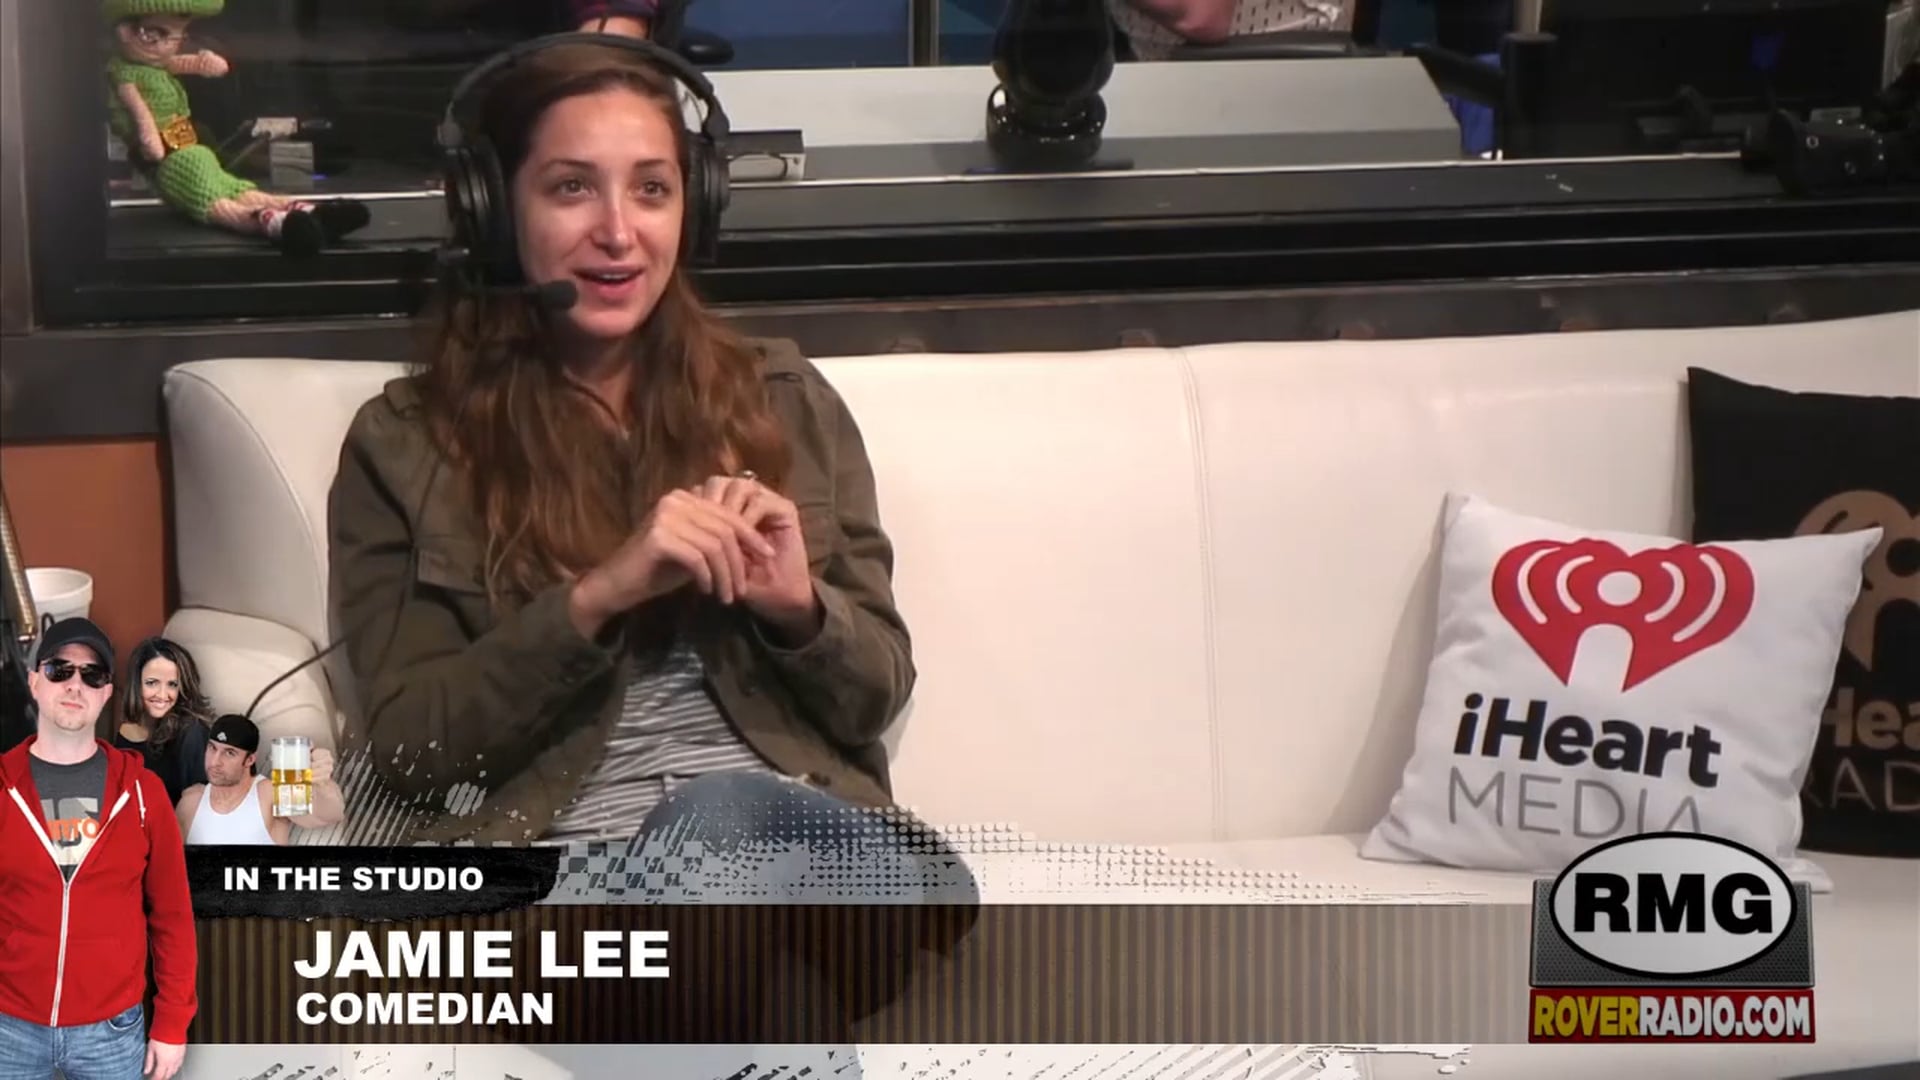 Lee comedian jamie Hot 10: